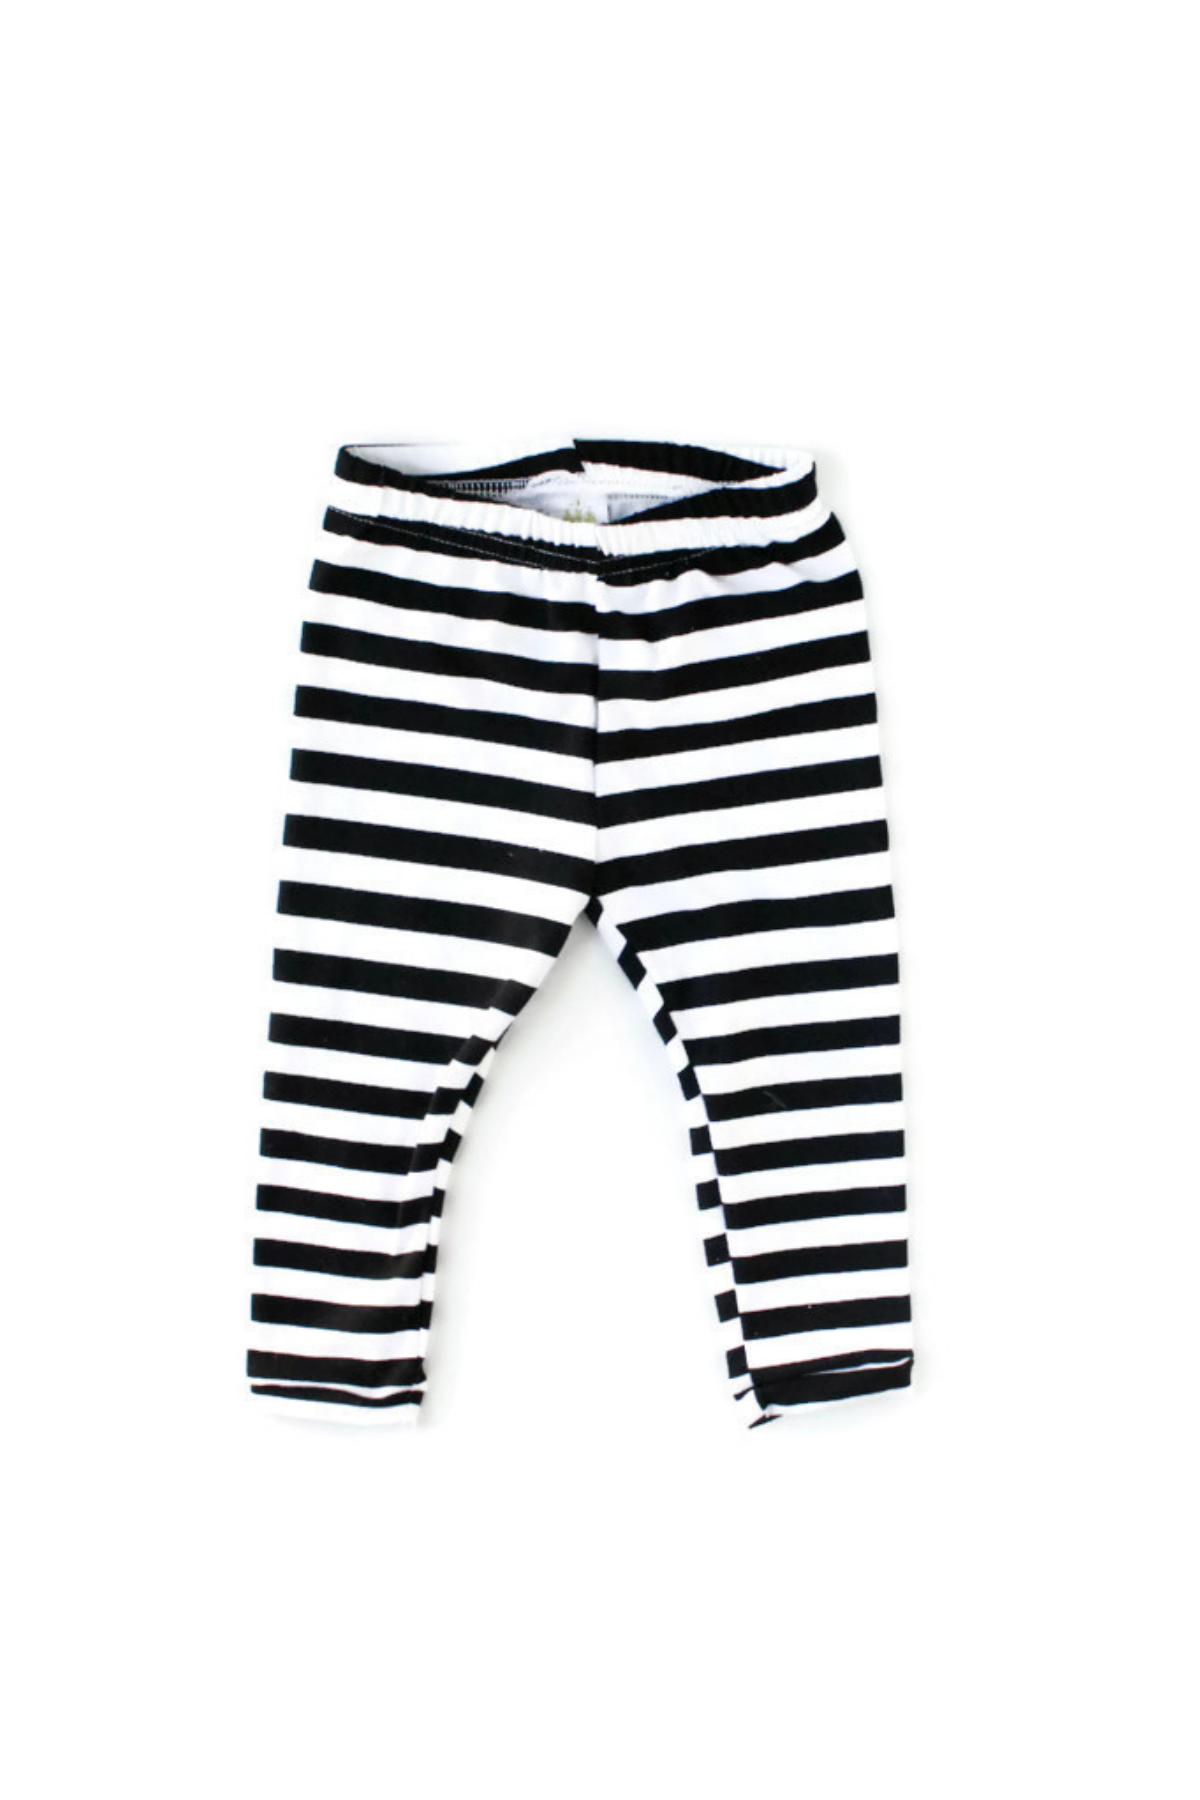 half inch white and black stripe leggings for girls